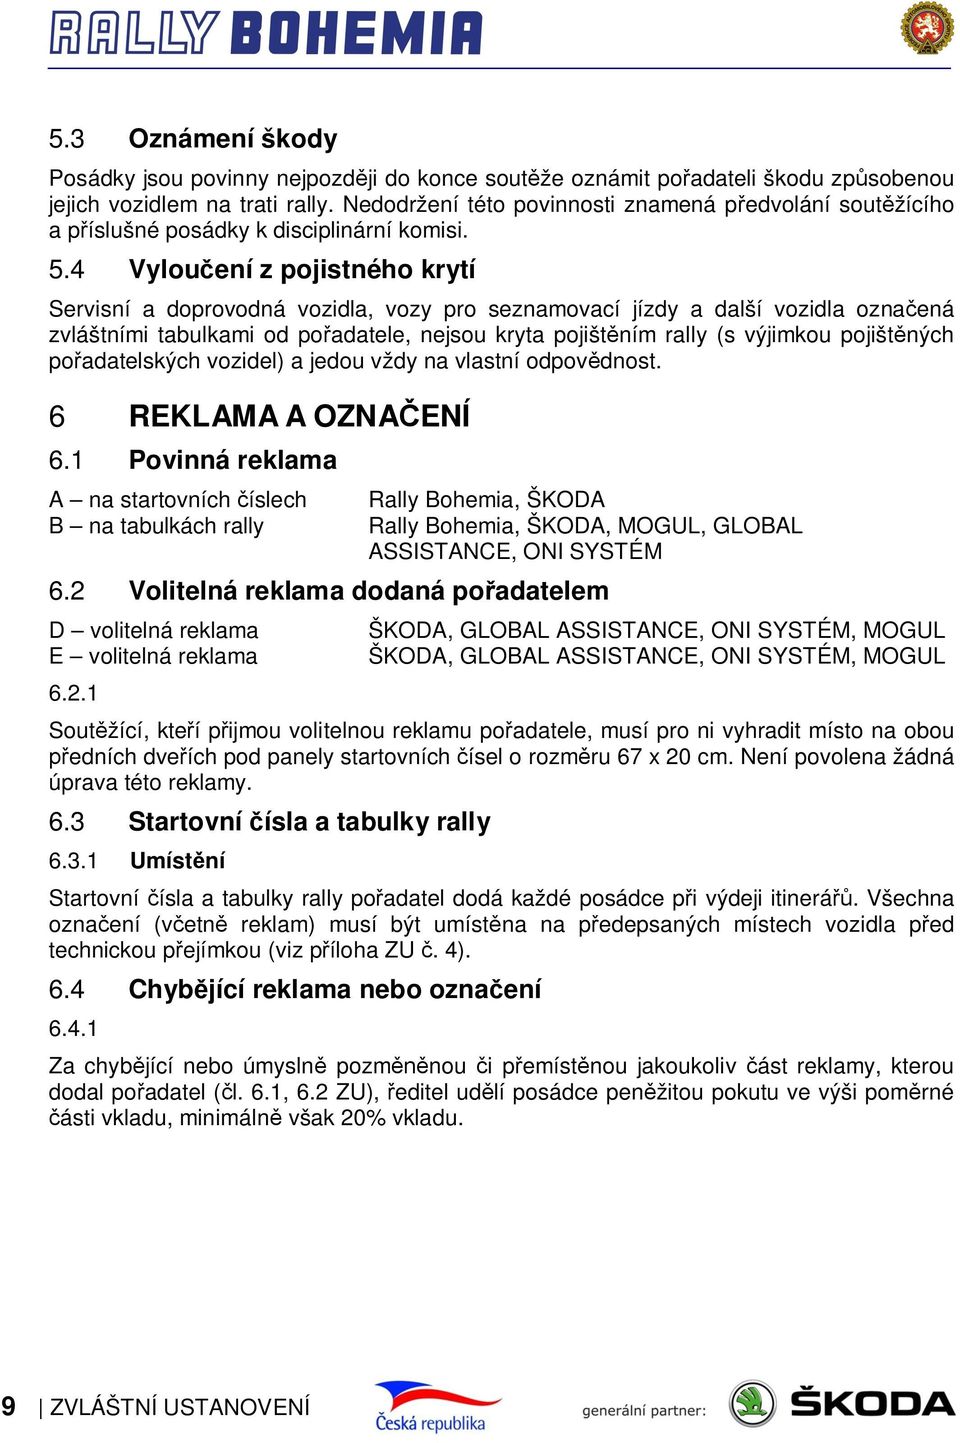 4 Vyloučení z pojistného krytí Servisní a doprovodná vozidla, vozy pro seznamovací jízdy a další vozidla označená zvláštními tabulkami od pořadatele, nejsou kryta pojištěním rally (s výjimkou